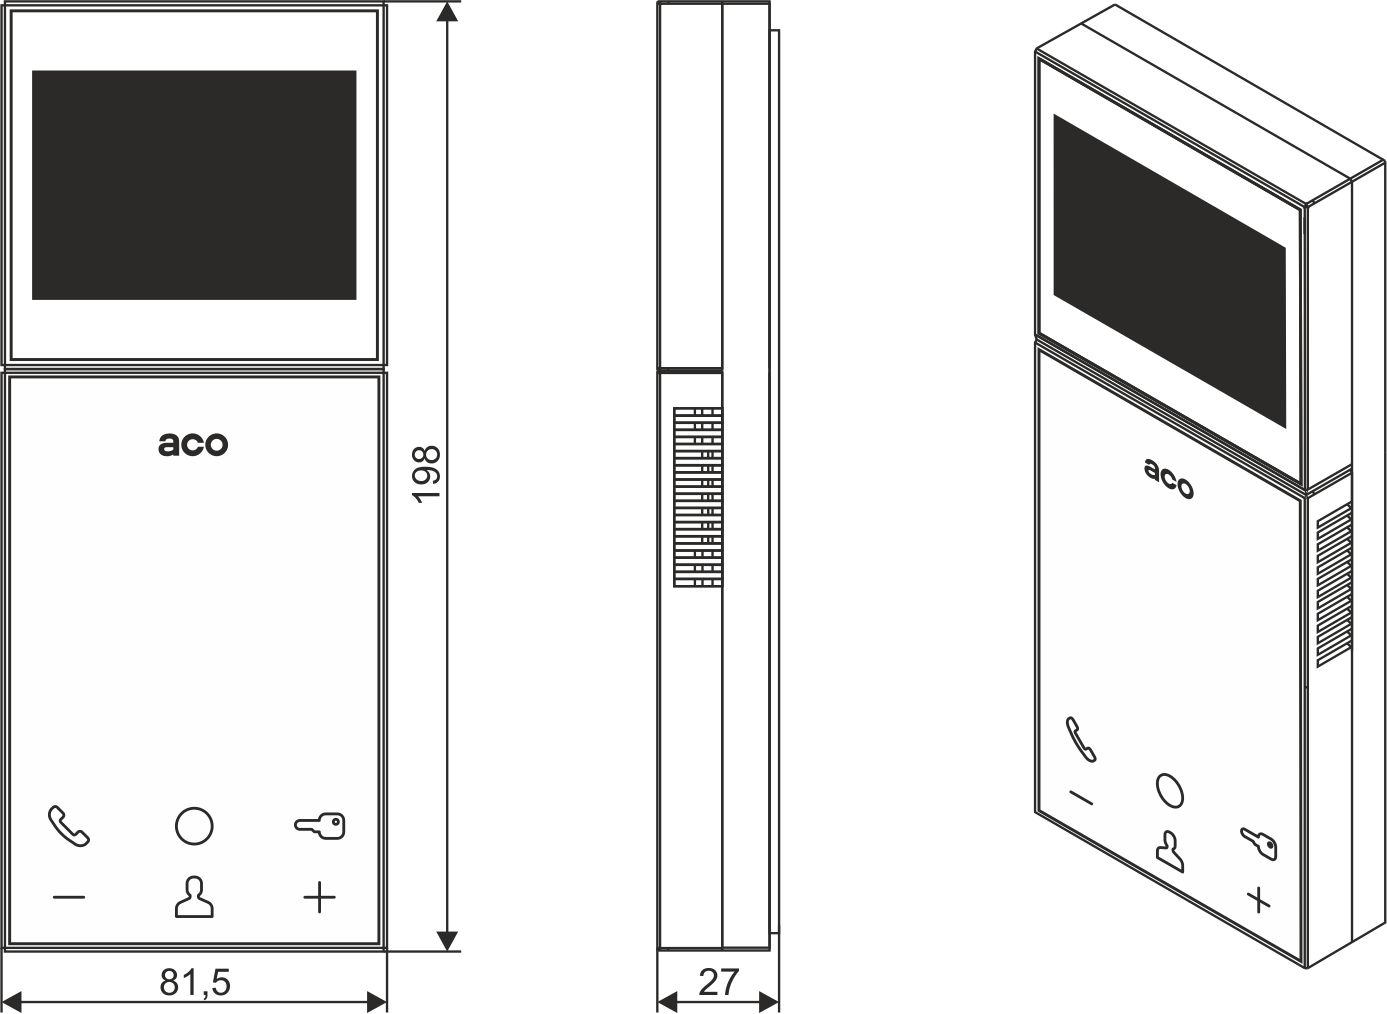 MPRO800 3,5″ Wideodbiornik głośnomówiący z płaskim frontem i 3,5 calowym kolorowym wyświetlaczem, z dotykowymi ikonami, do systemu PRO. - Wymiary